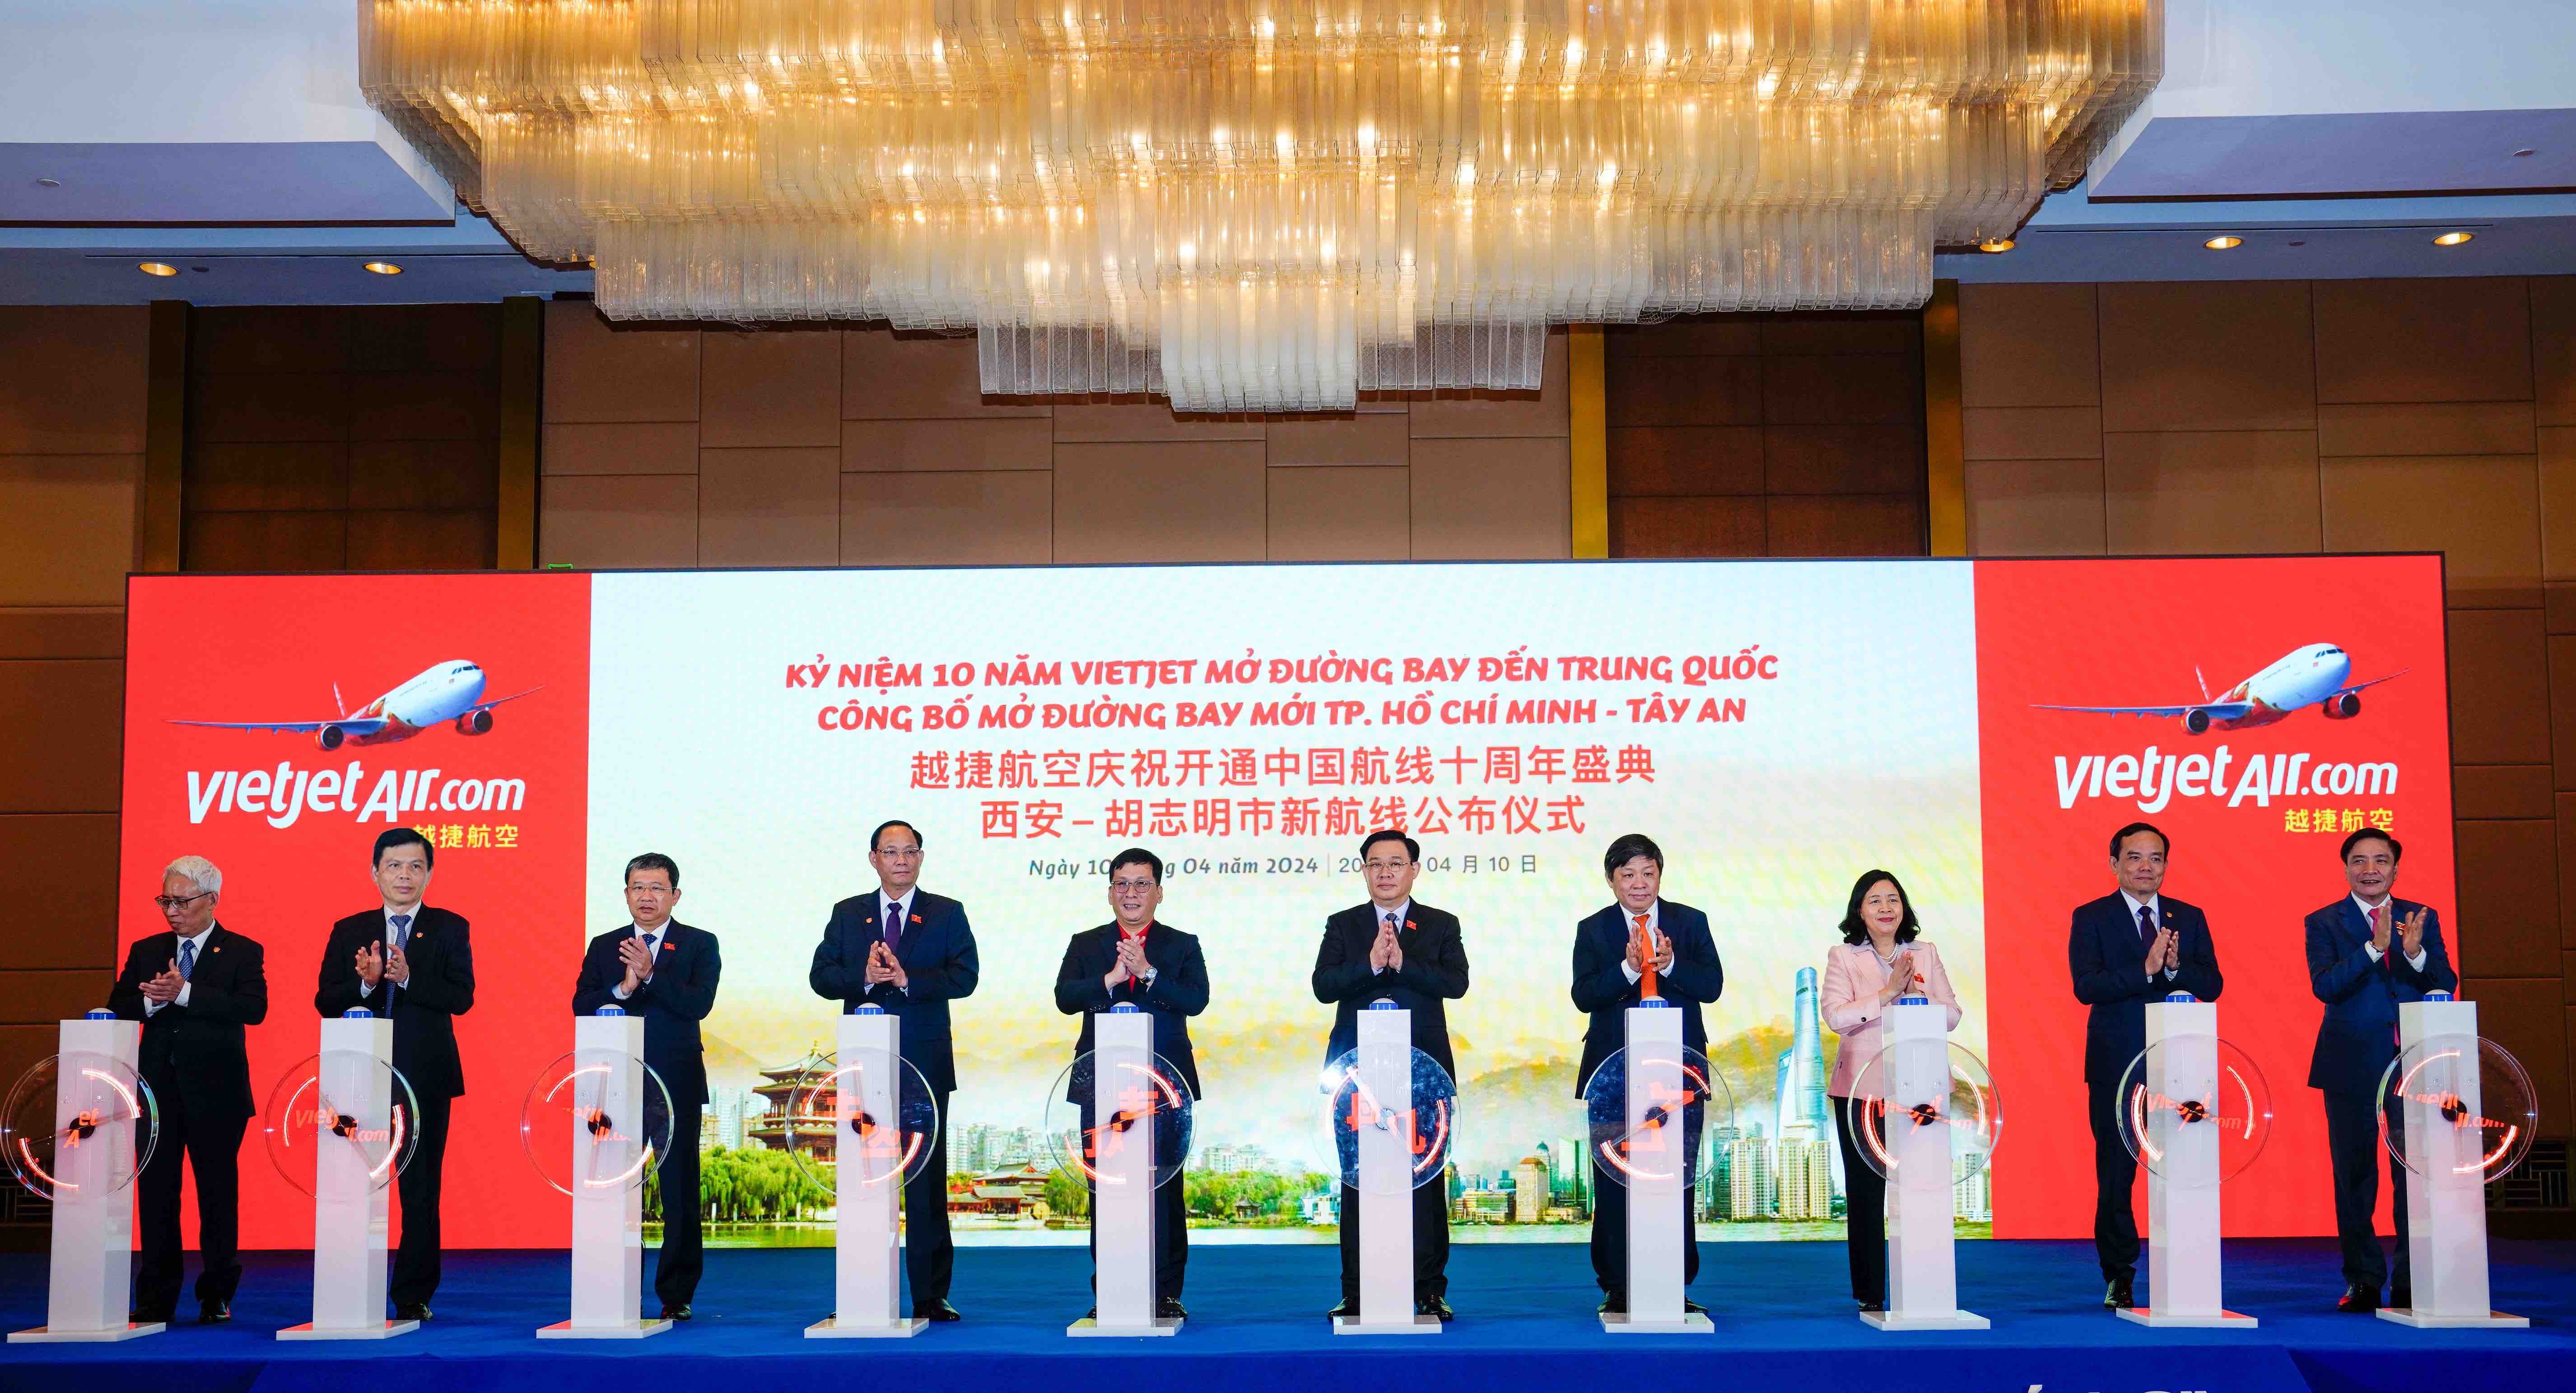 Vietjet công bố đường bay mới TP. Hồ Chí Minh – Tây An (Trung Quốc) - 2